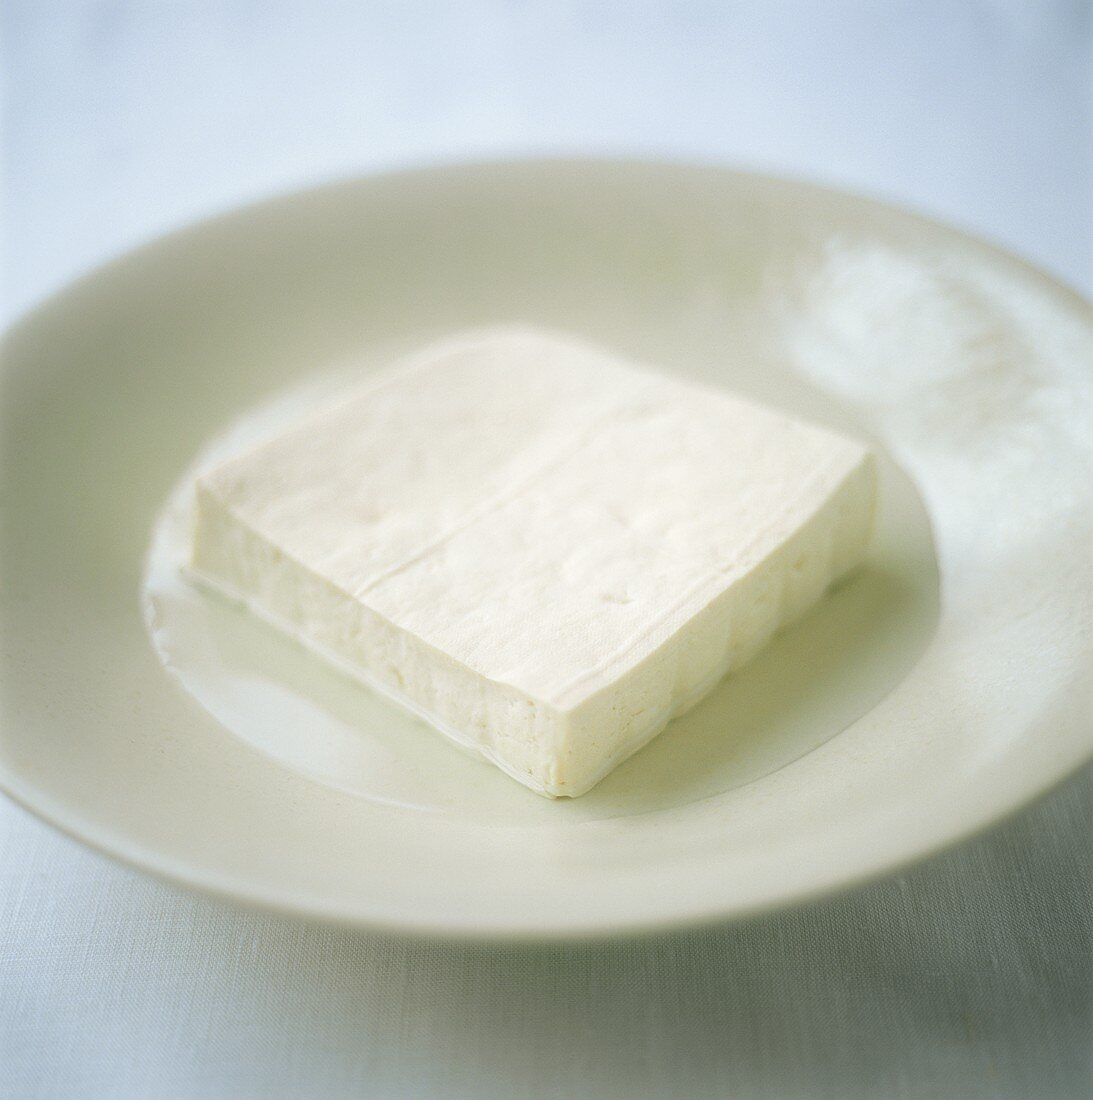 Tofu slice on plate 